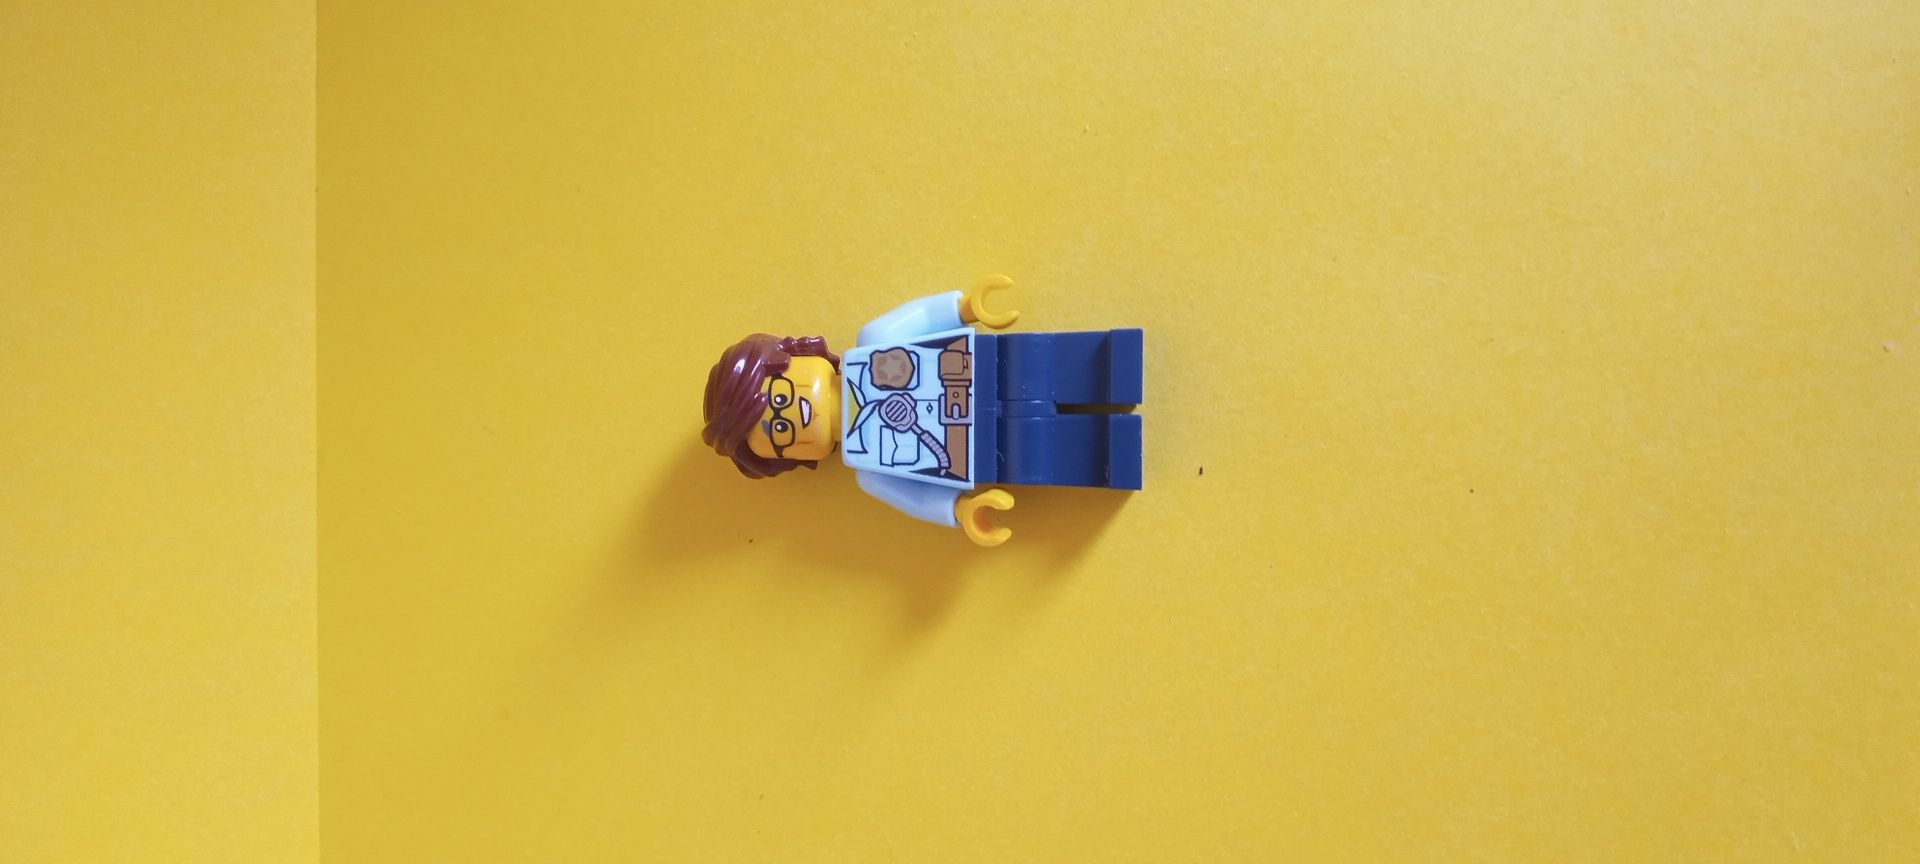 Lego ludrzik policija